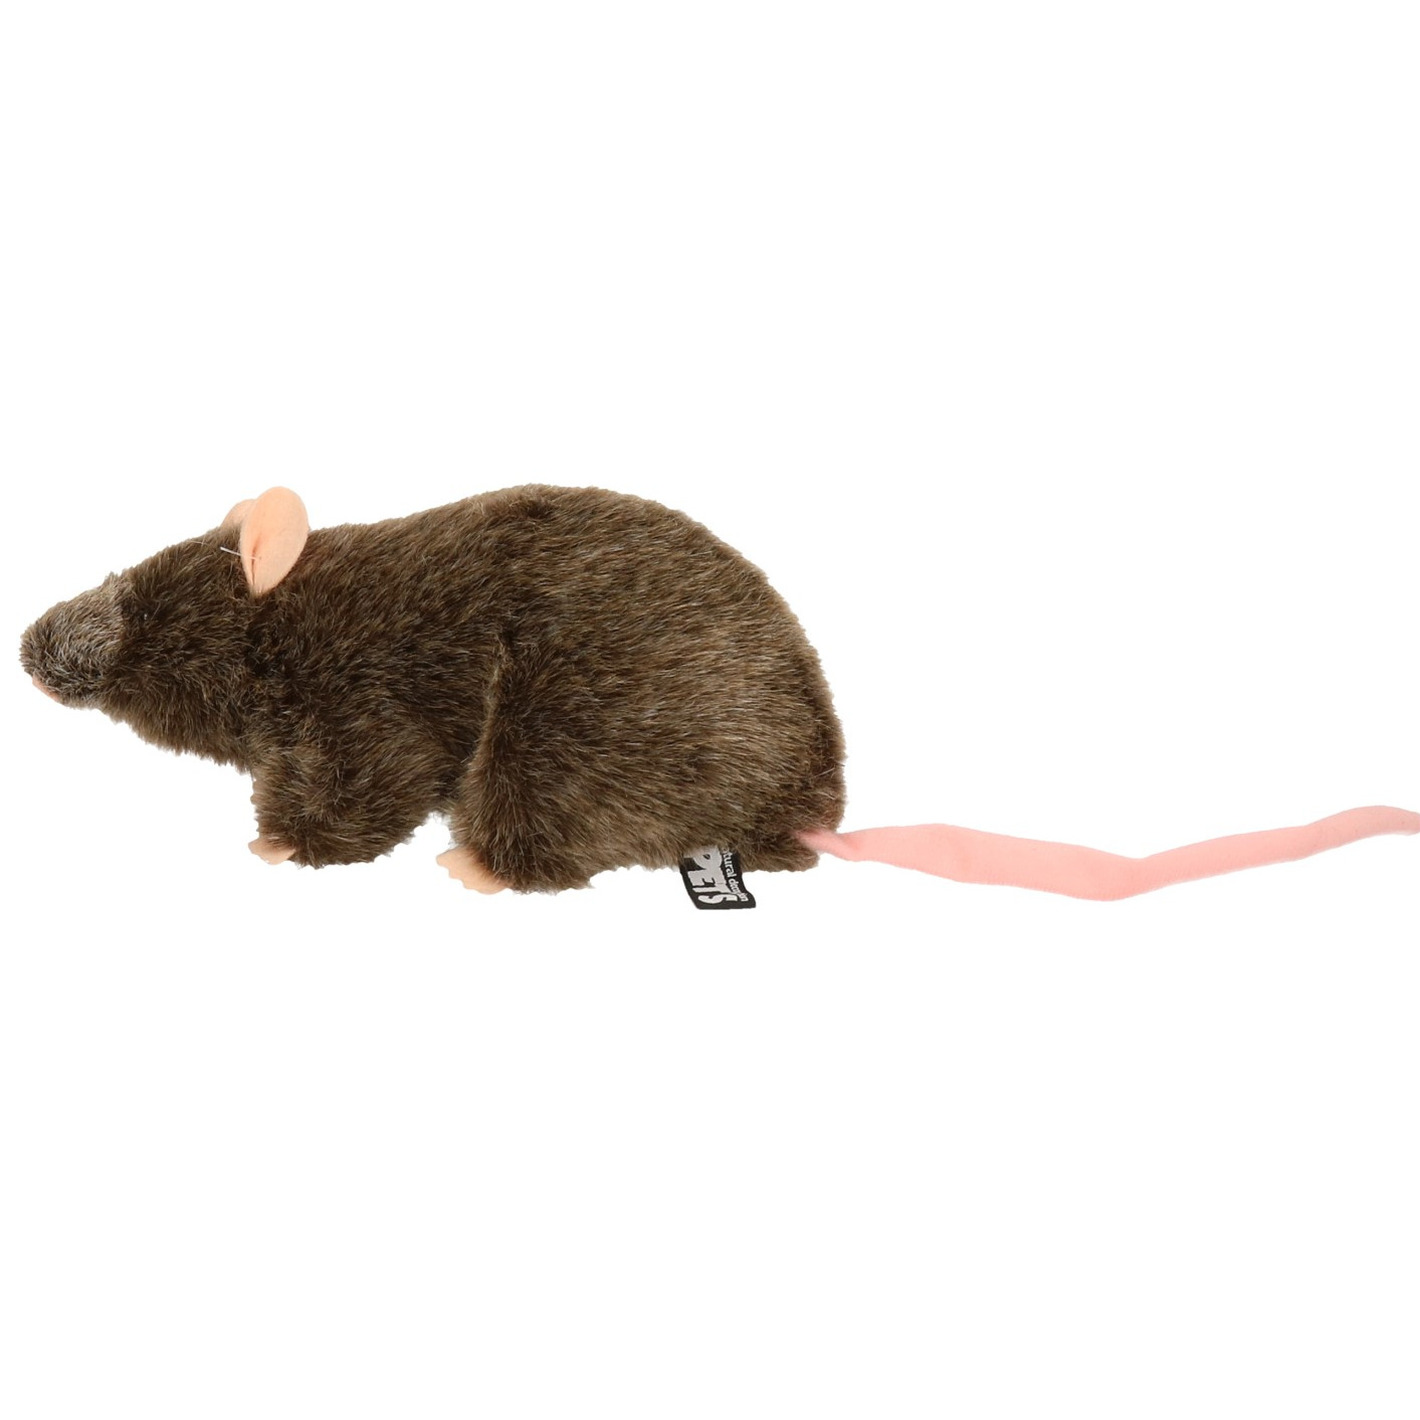 Pluche bruine rat staand knuffel 22 cm speelgoed